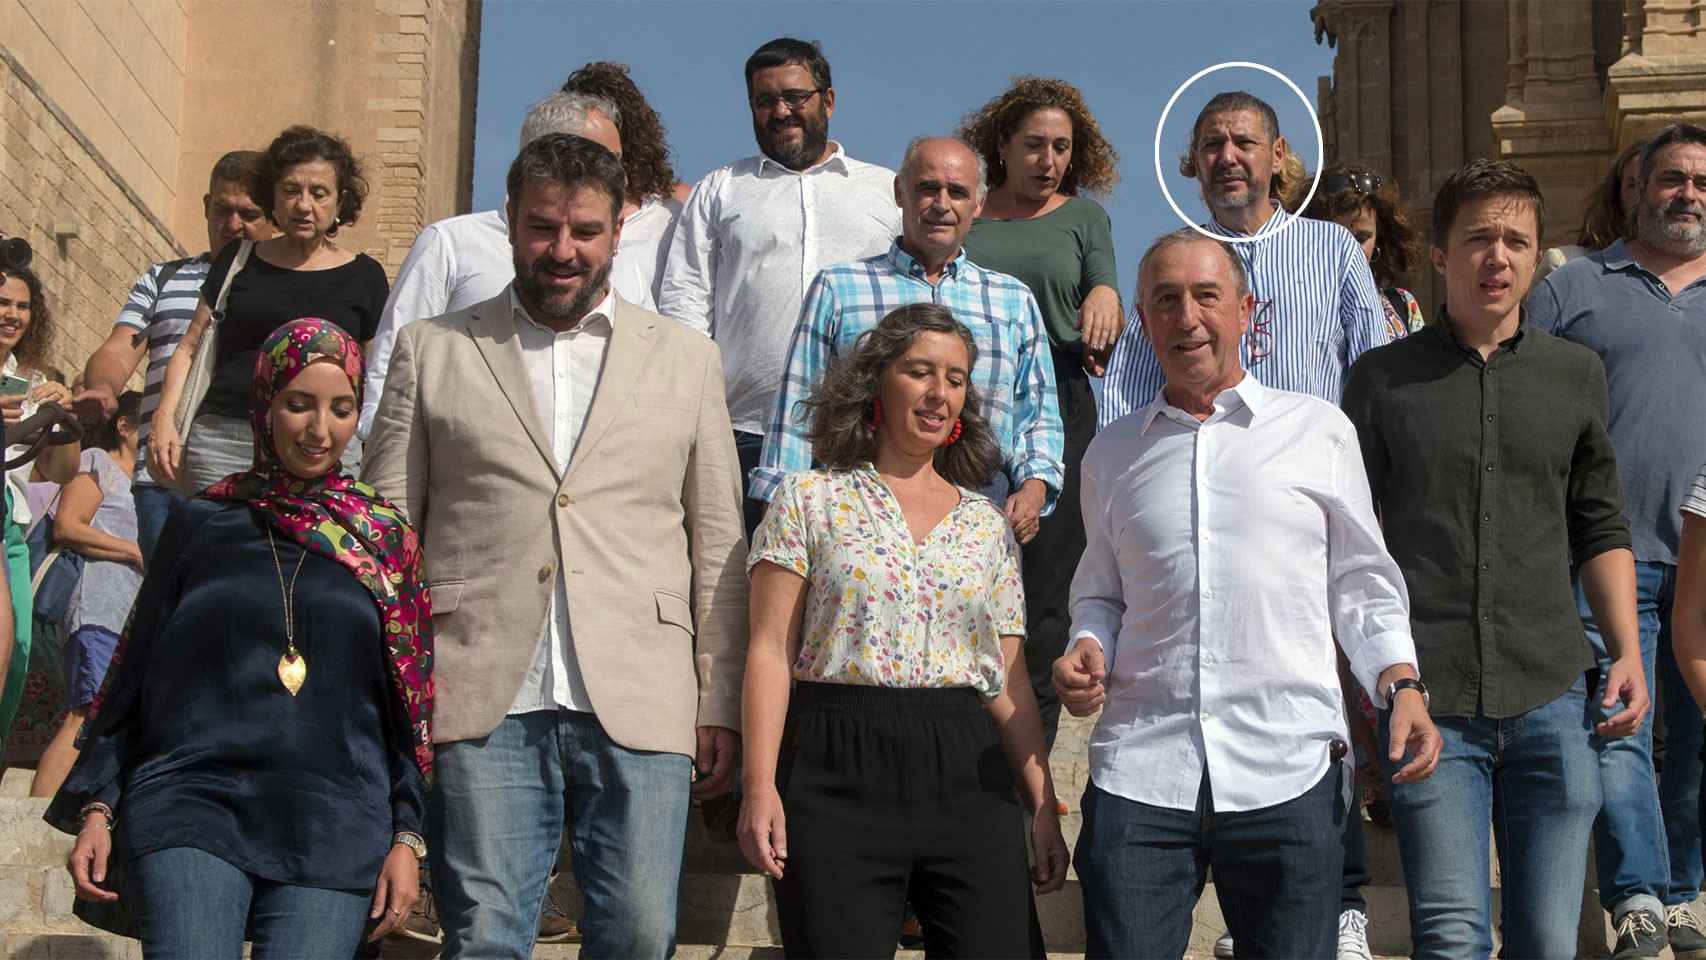 Mustafa Aberchán, líder de Coalición por Melilla, señalado por un círculo. Está situado detrás de Joan Baldoví (camisa blanca), de Compromís, e Iñigo Errejón (camisa negra) de Más País. A la izquierda de la imagen está Fátima Hamed, del MDyC ceutí.